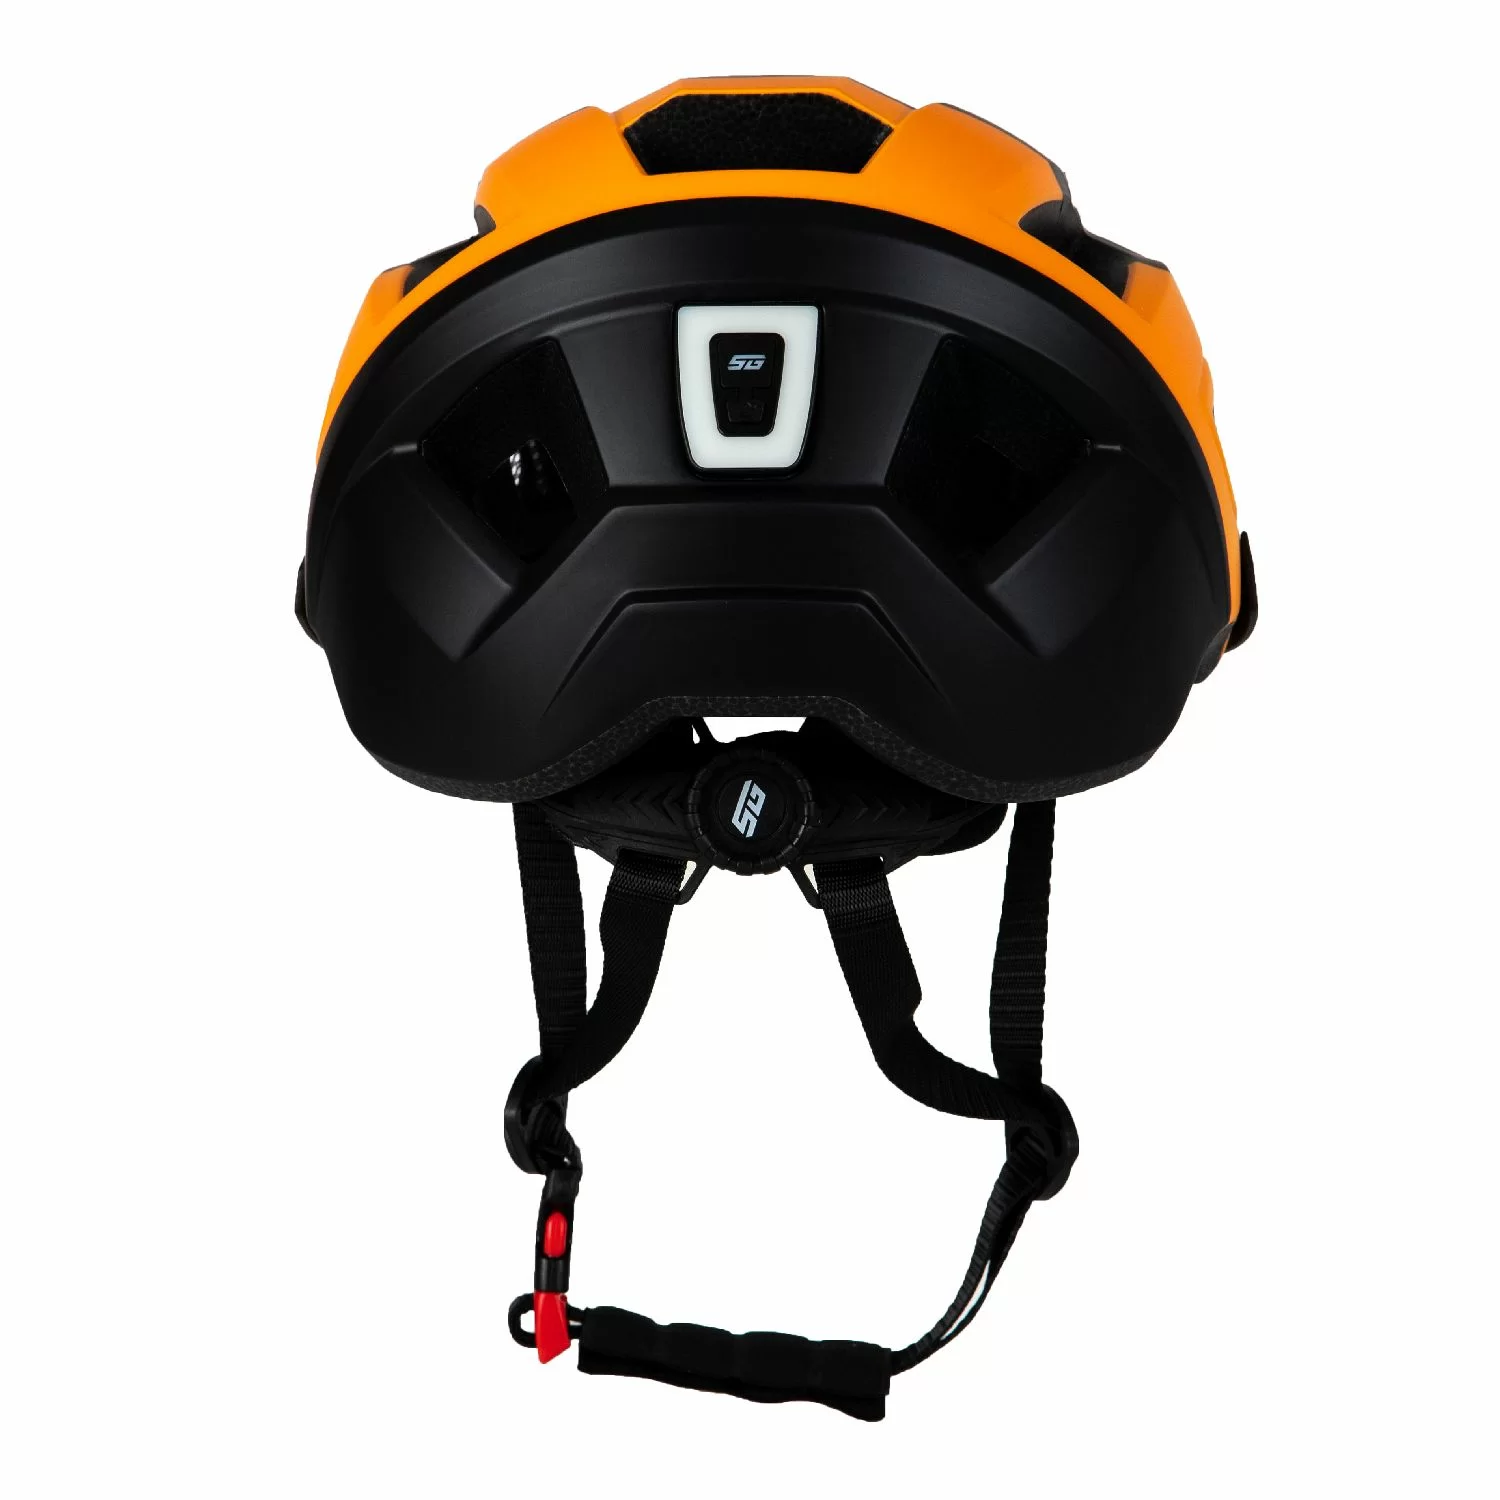 Реальное фото Шлем STG TS-39 черный/оранжевый Х112433 от магазина СпортЕВ